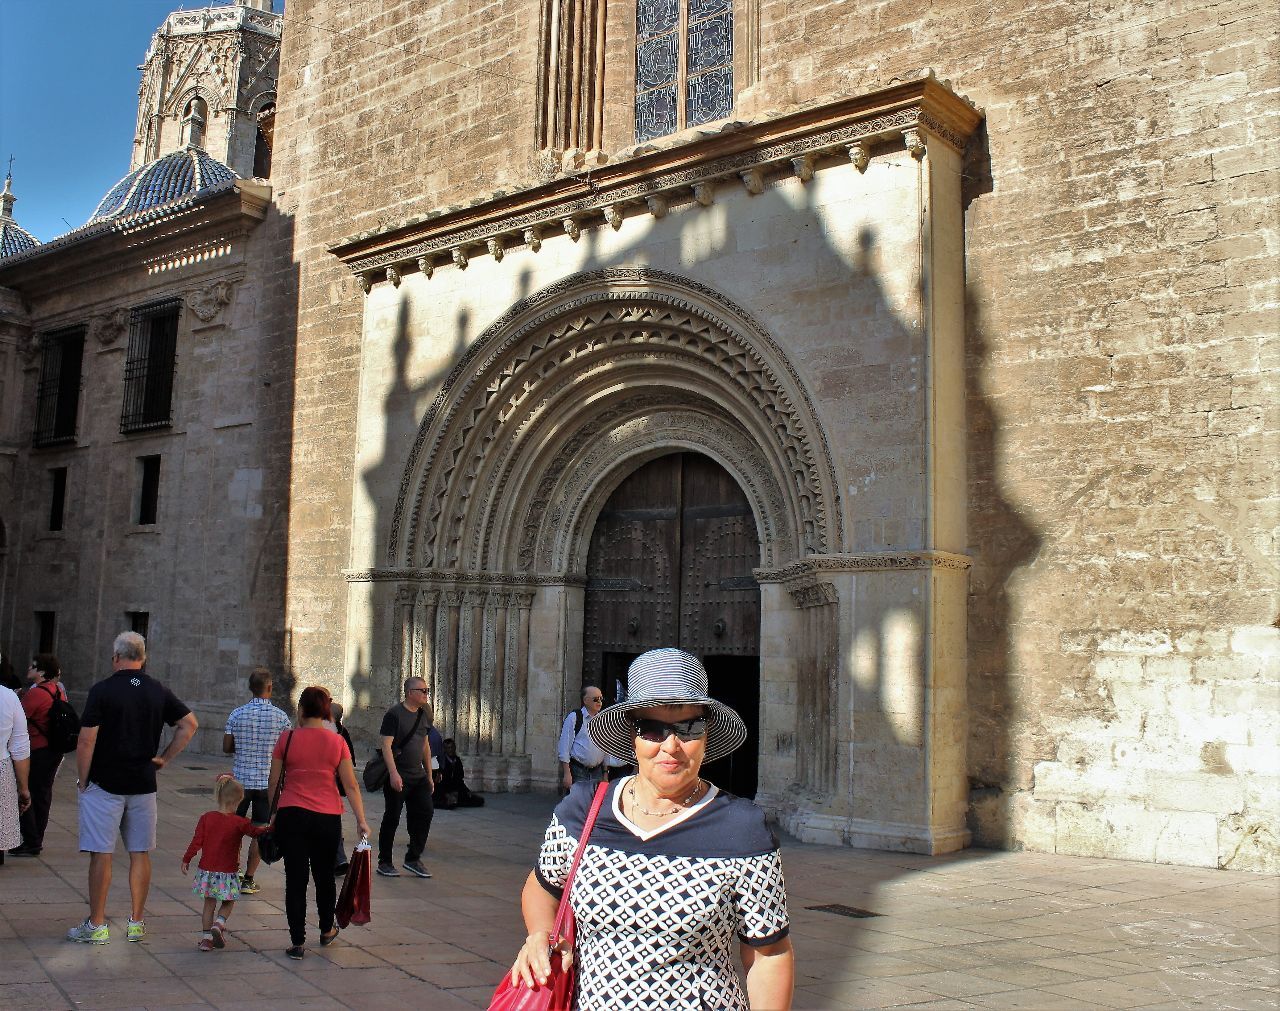 Портал Пуэрта-де-ла-Альмойна - «Врата милостыни», самые древние врата собора. - Испания  - с любовью...